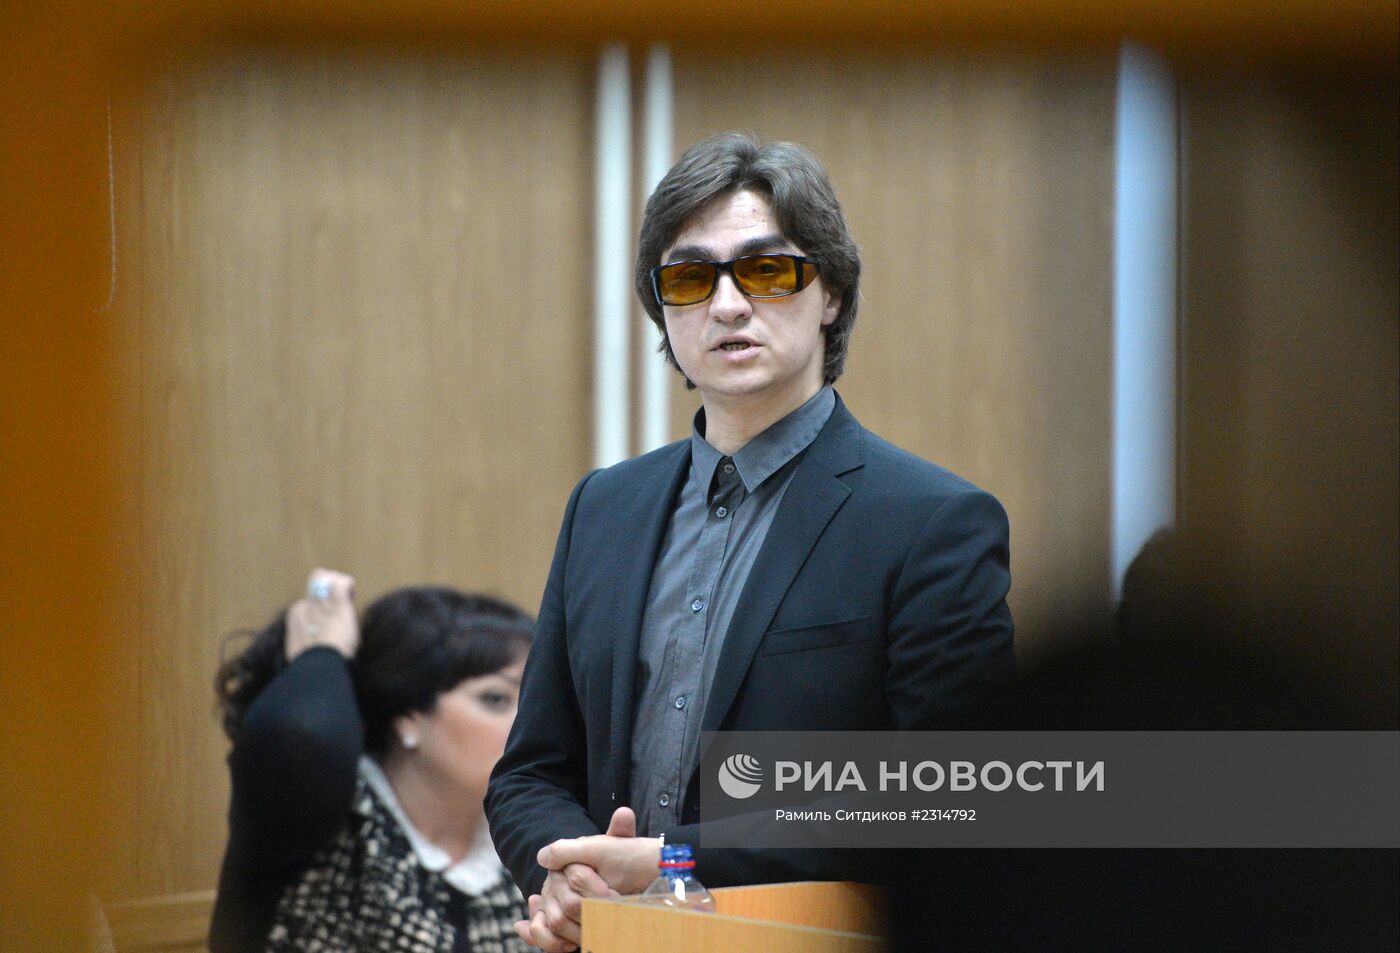 Сергей Филин вызван в суд на допрос по делу о нападении на него